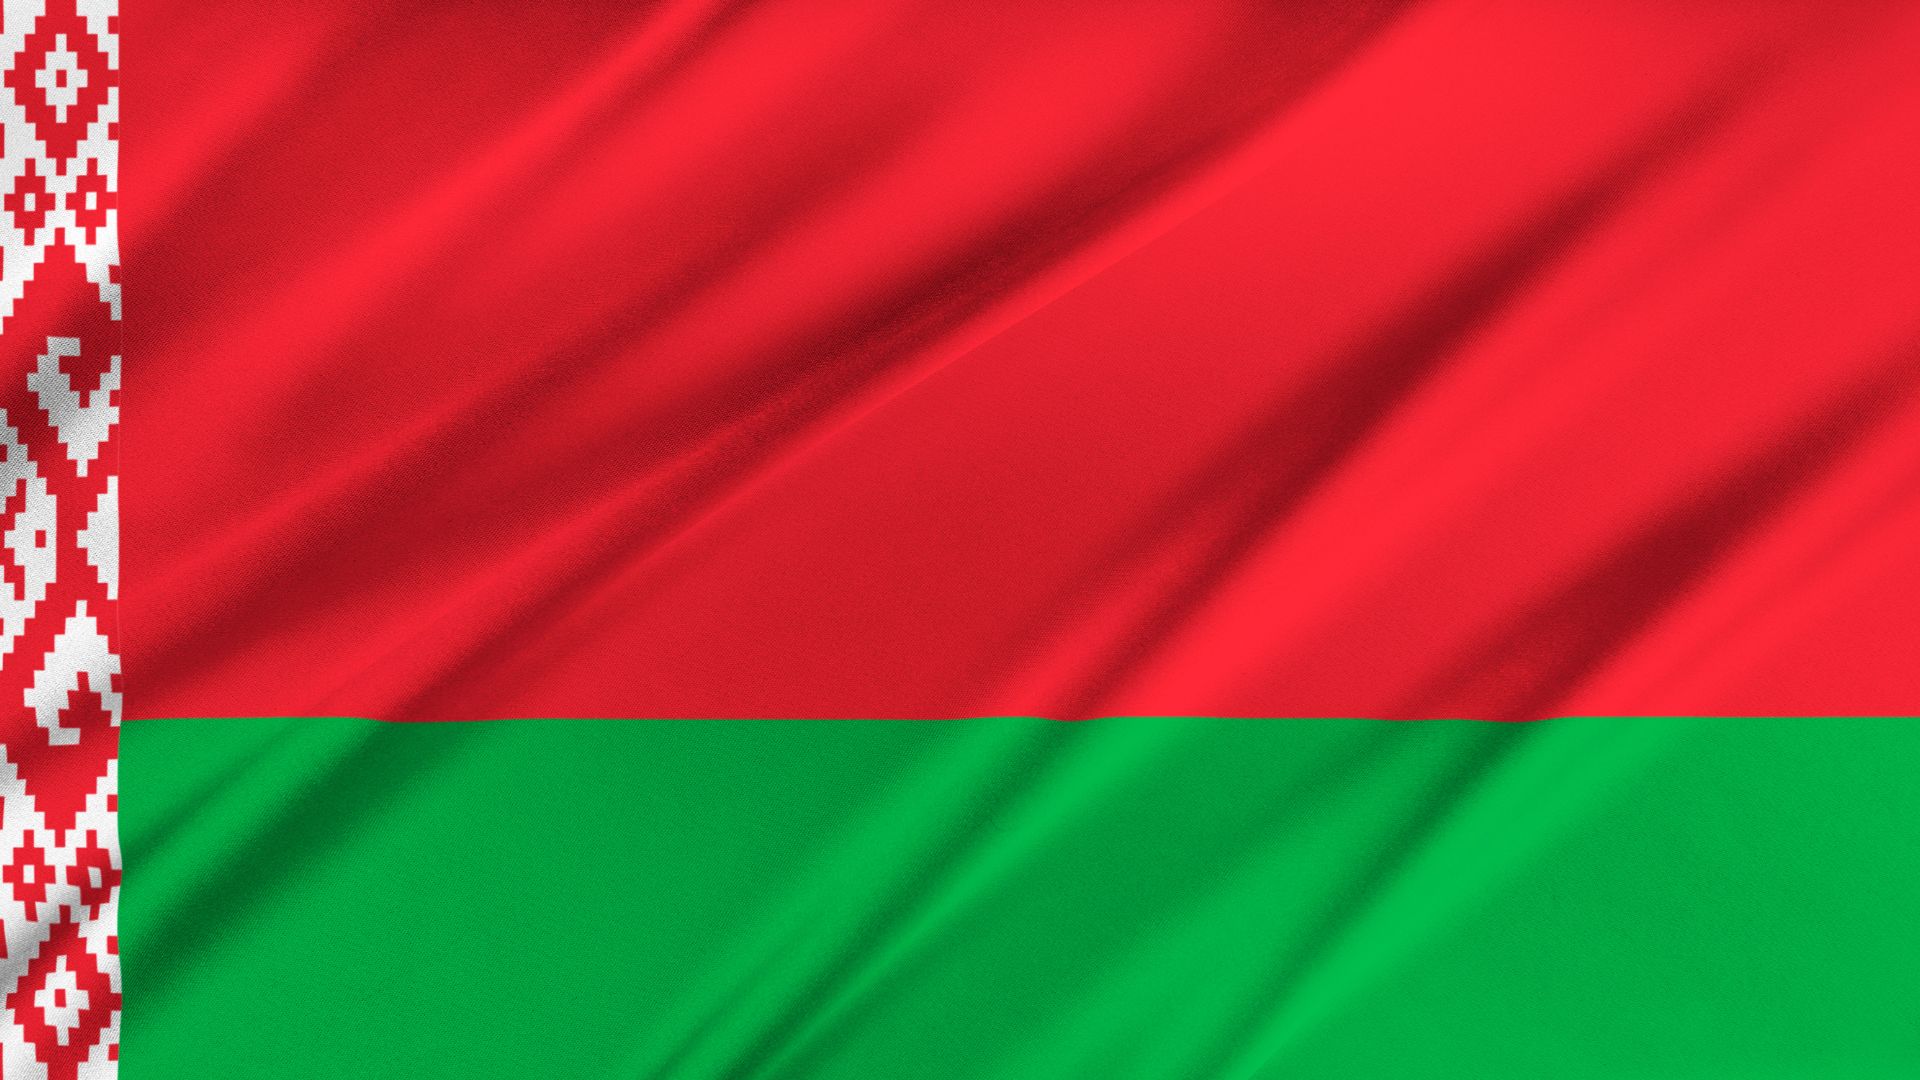 A bandeira da Bielorrússia ou Belarus  é composta por um pano retangular formado por duas faixas longitudinais: uma superior de cor vermelha e uma inferior de cor verde.